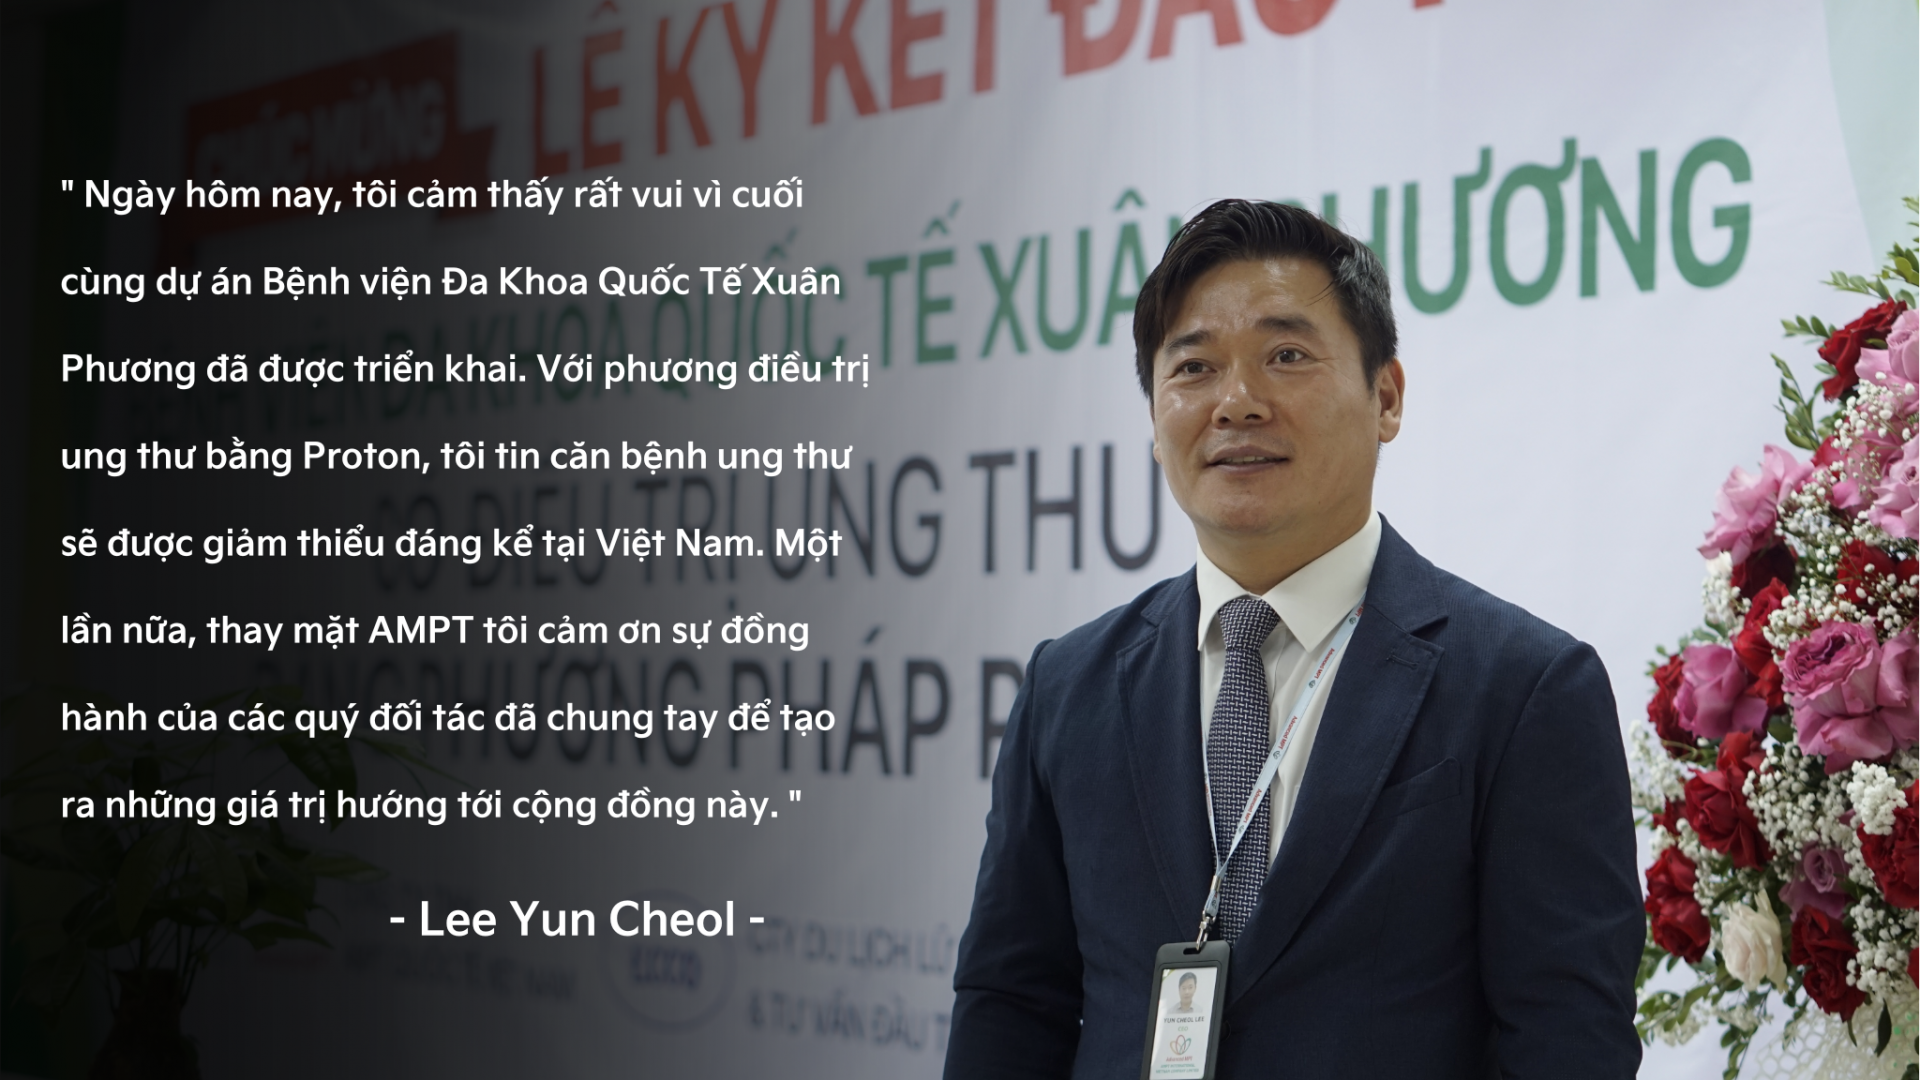 Công ty TNHH Quốc Tế AMPT Việt Nam : Sứ mệnh hướng tới sức khỏe cộng đồng